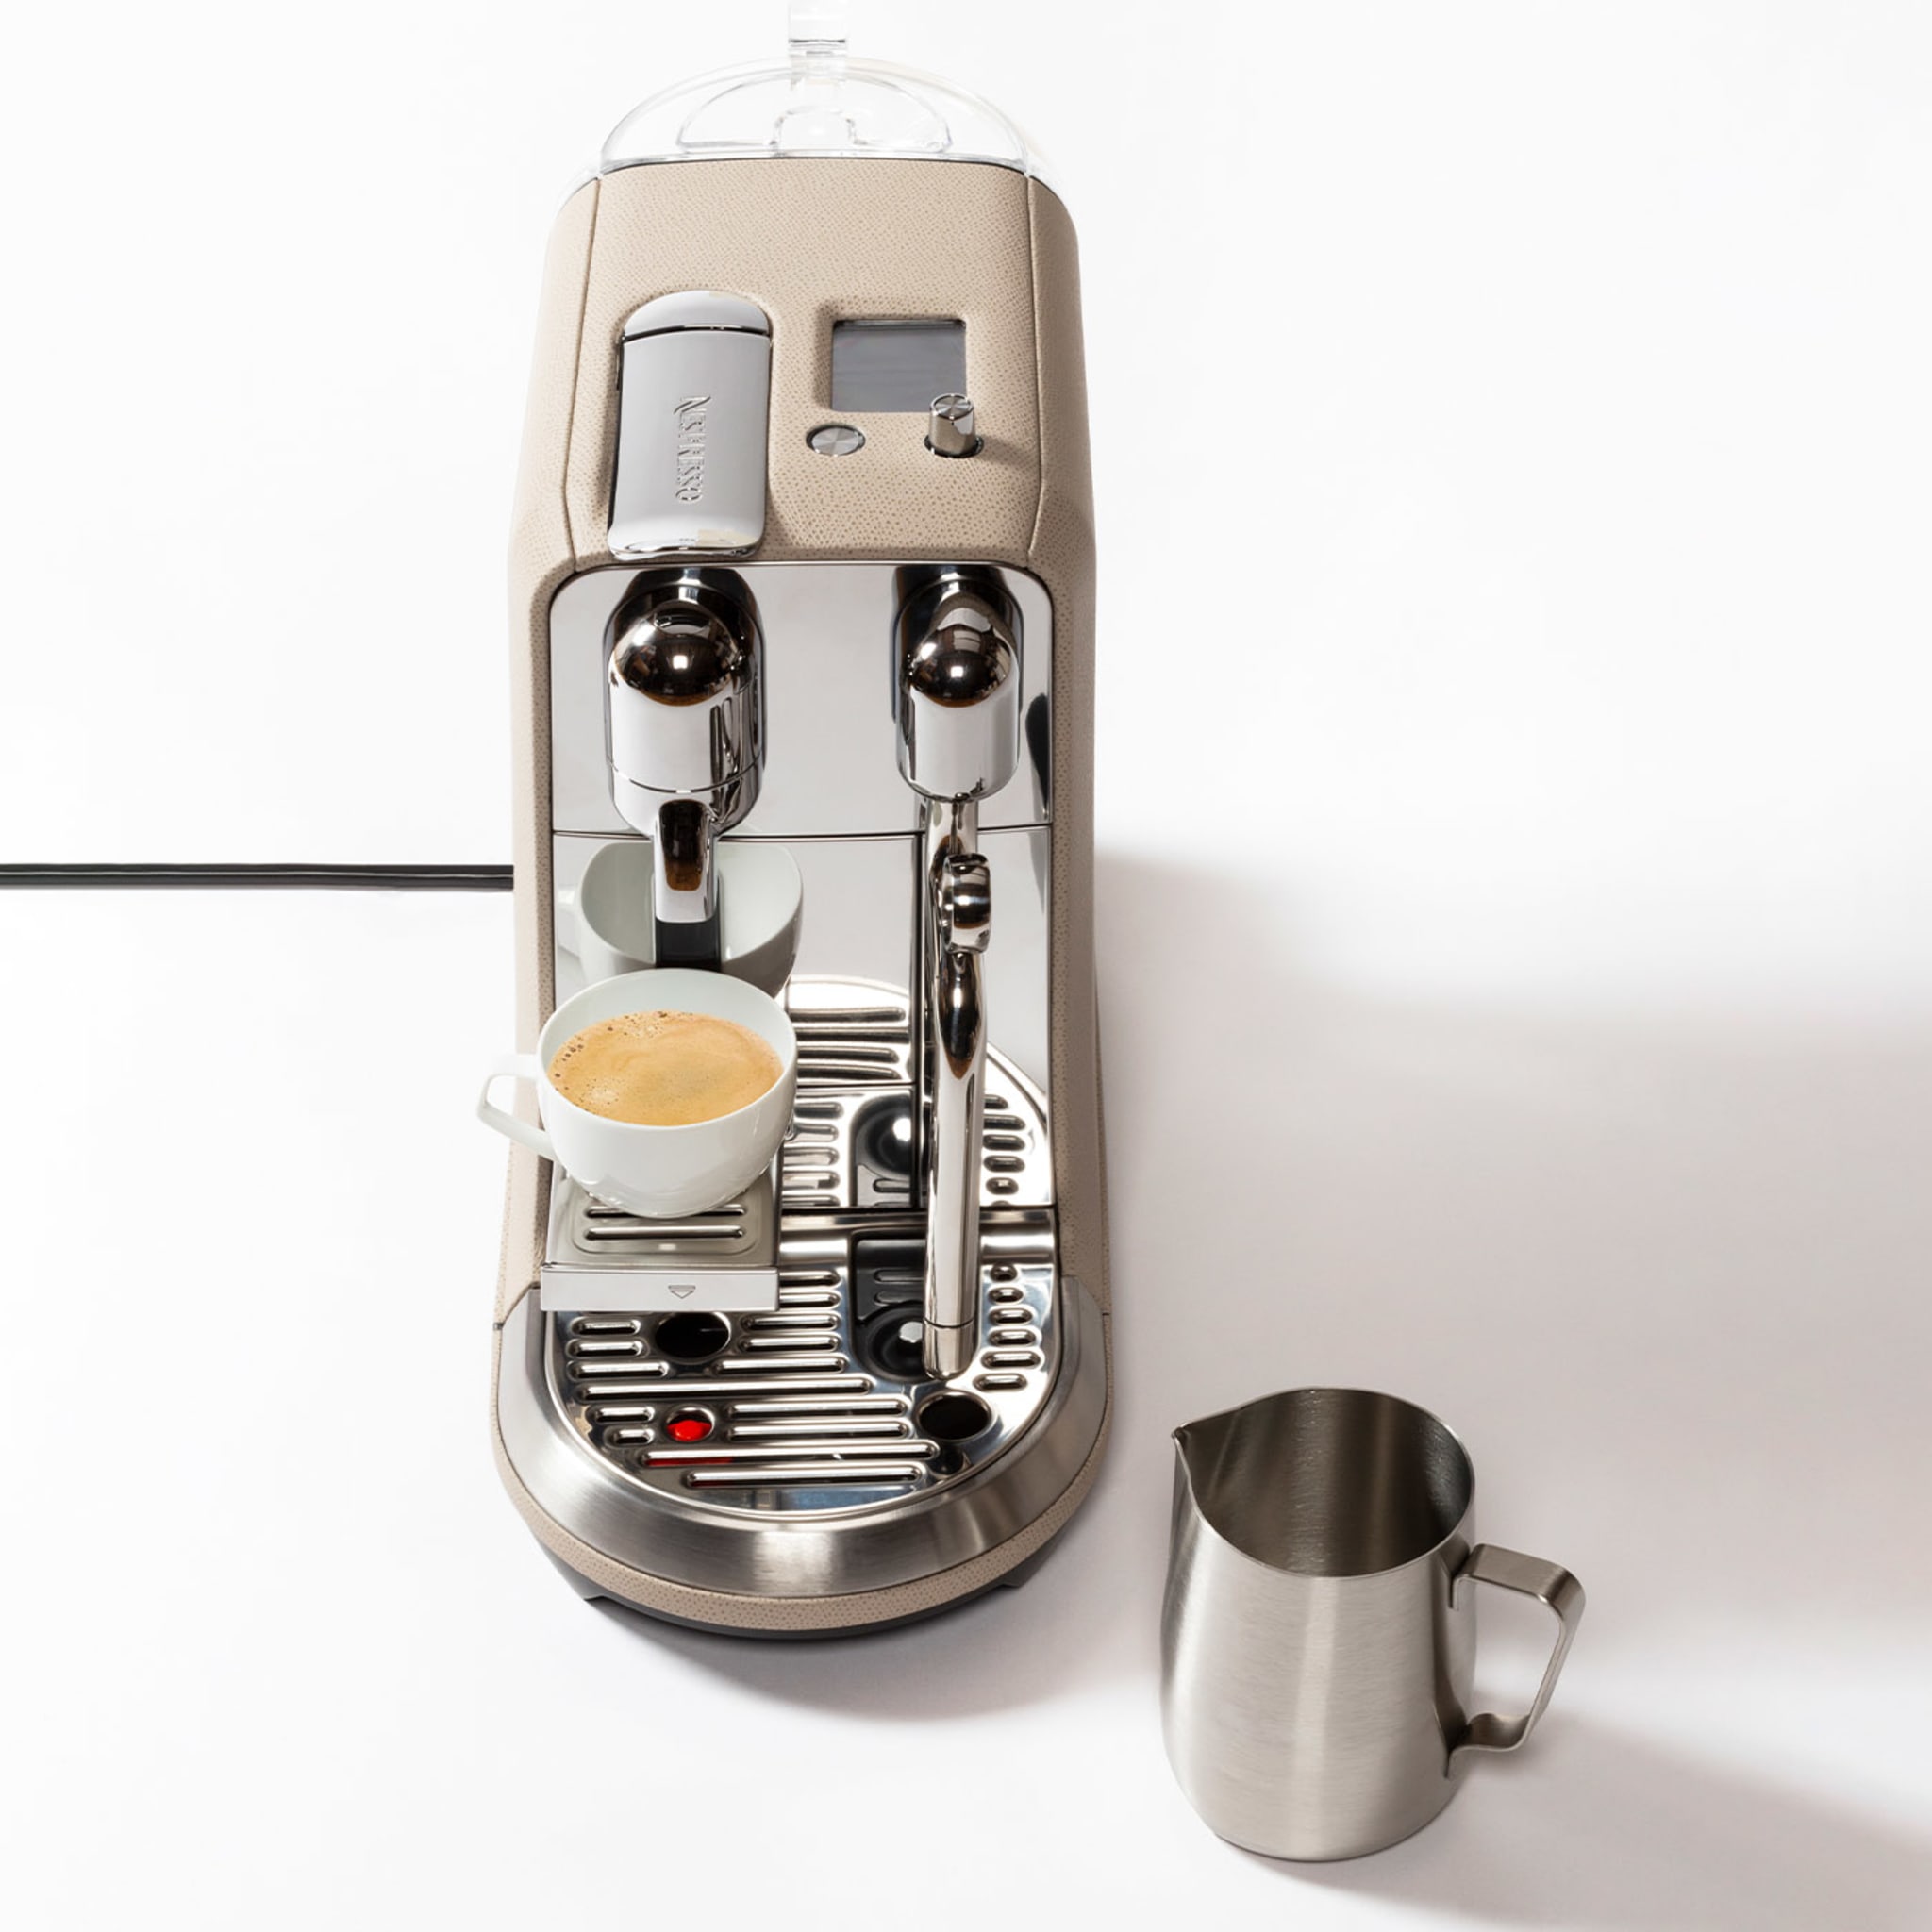 Creatista Beige Plus Coffee Machine - Alternative view 1